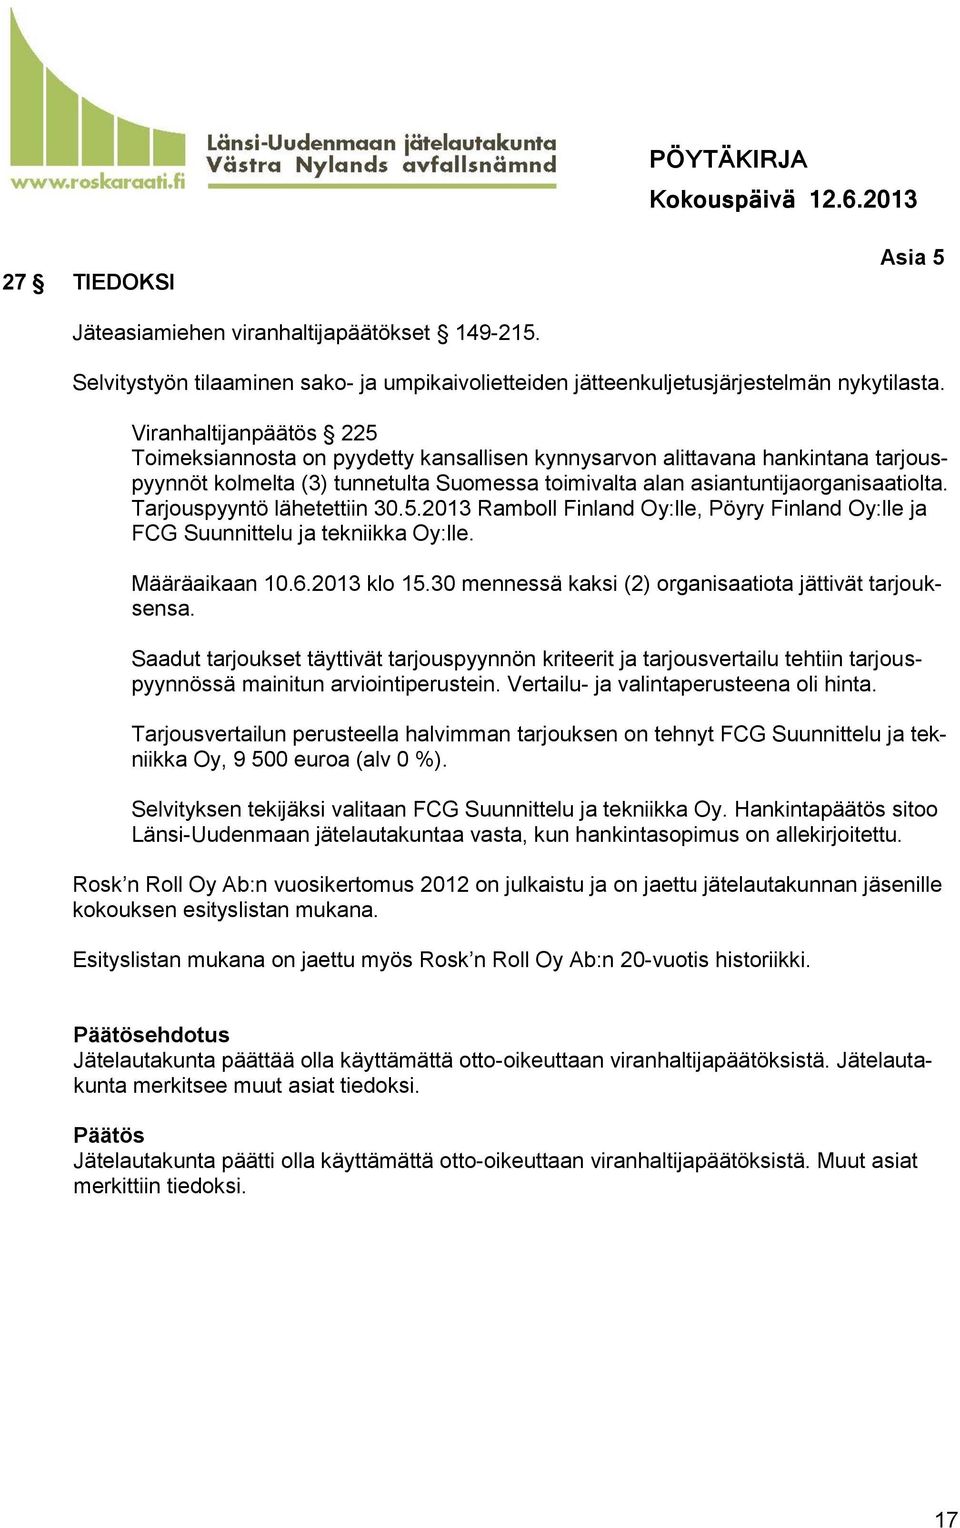 Tarjouspyyntö lähetettiin 30.5.2013 Ramboll Finland Oy:lle, Pöyry Finland Oy:lle ja FCG Suunnittelu ja tekniikka Oy:lle. Määräaikaan 10.6.2013 klo 15.